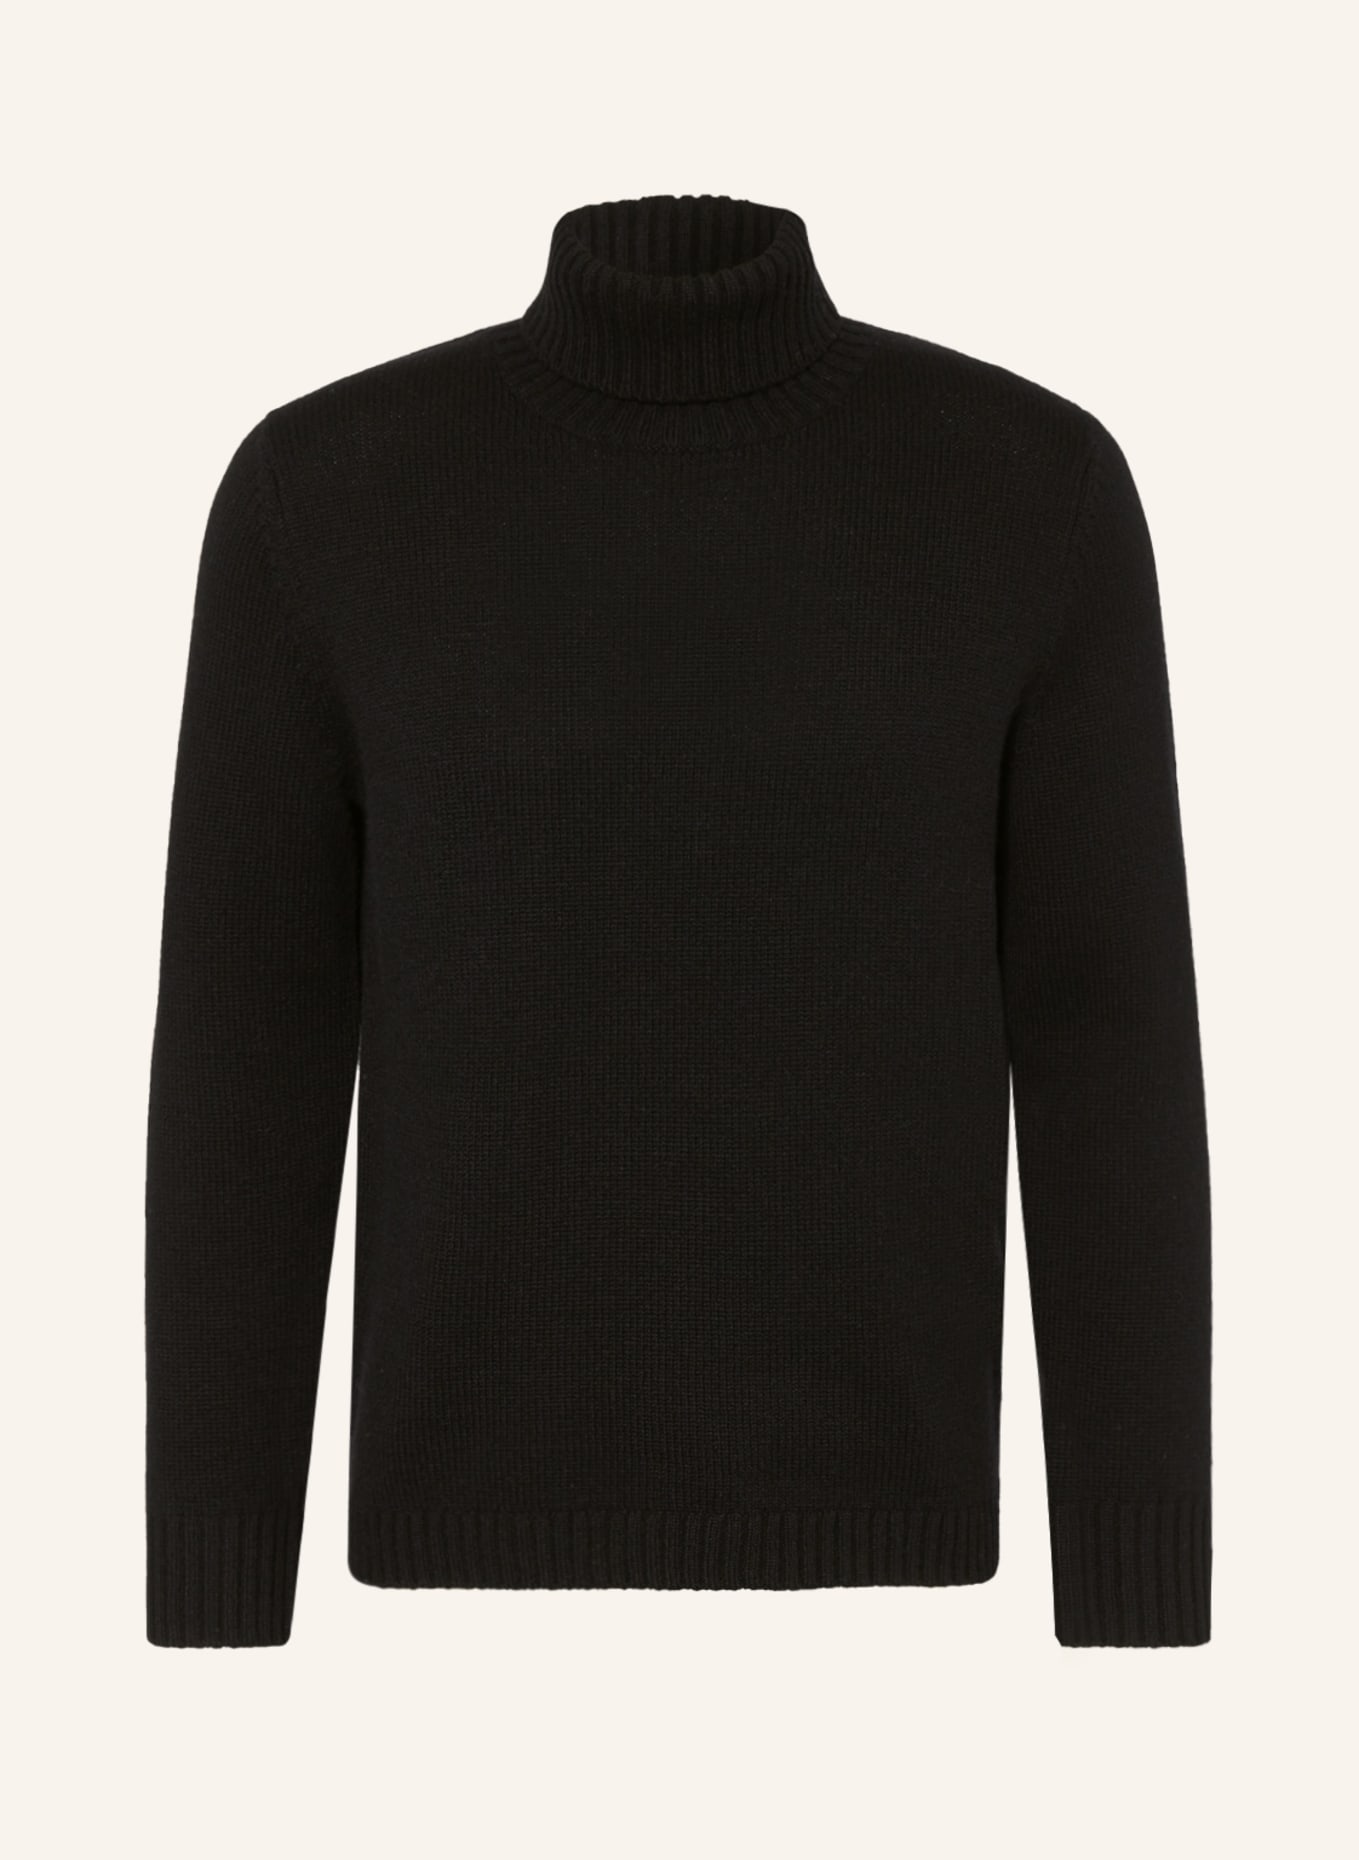 PAUL Turtleneck sweater, Color: BLACK (Image 1)